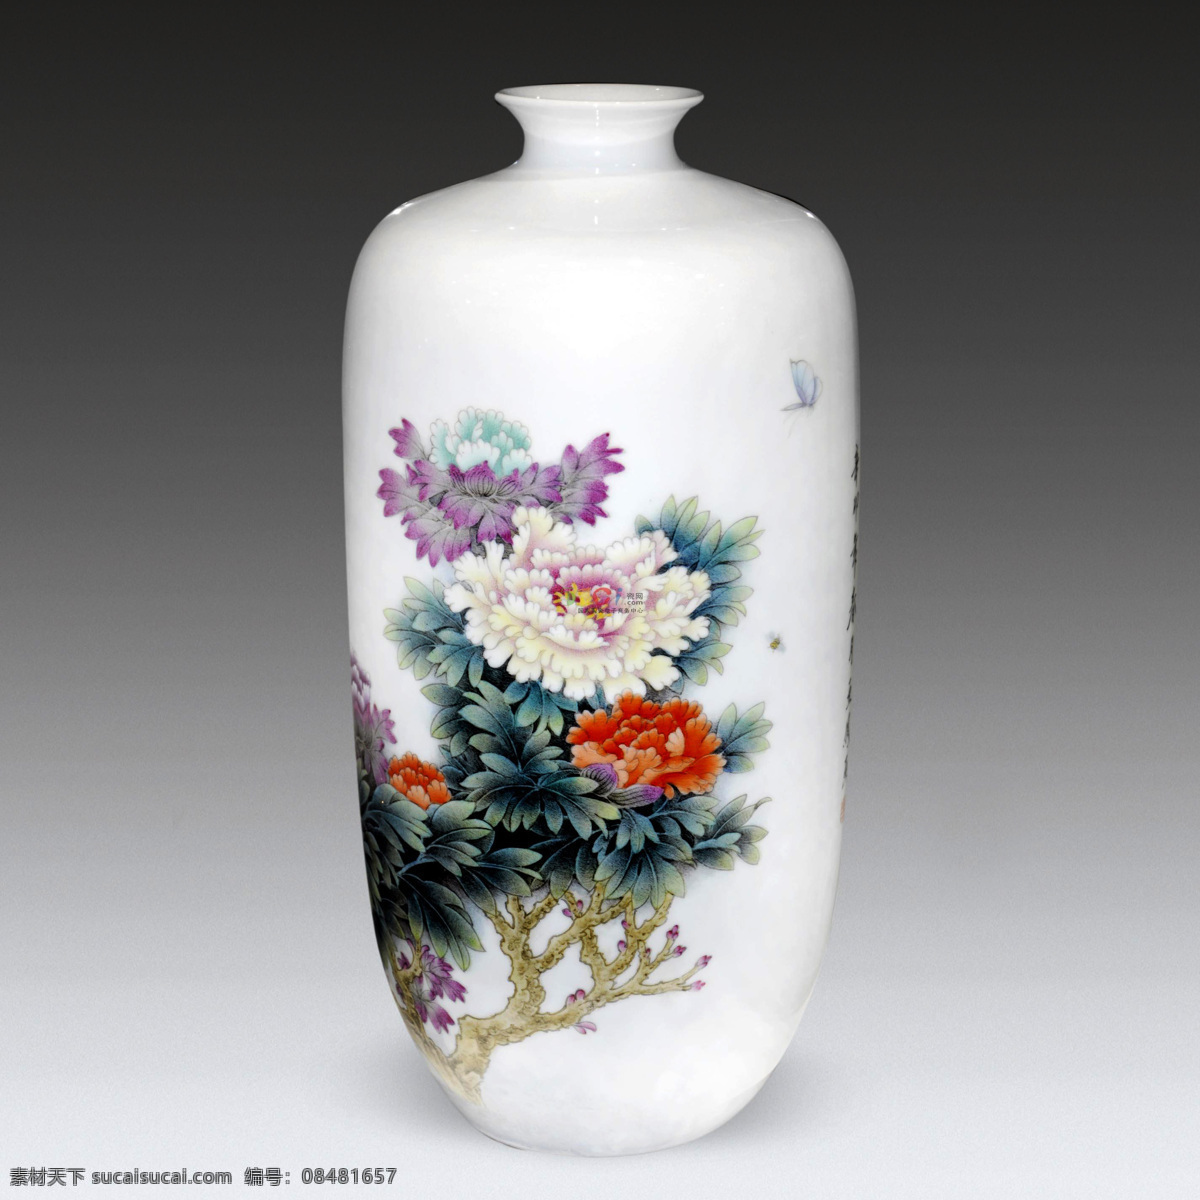 陶瓷 瓷器 瓷罐 彩色陶瓷 瓷瓶 牡丹 文化艺术 传统文化